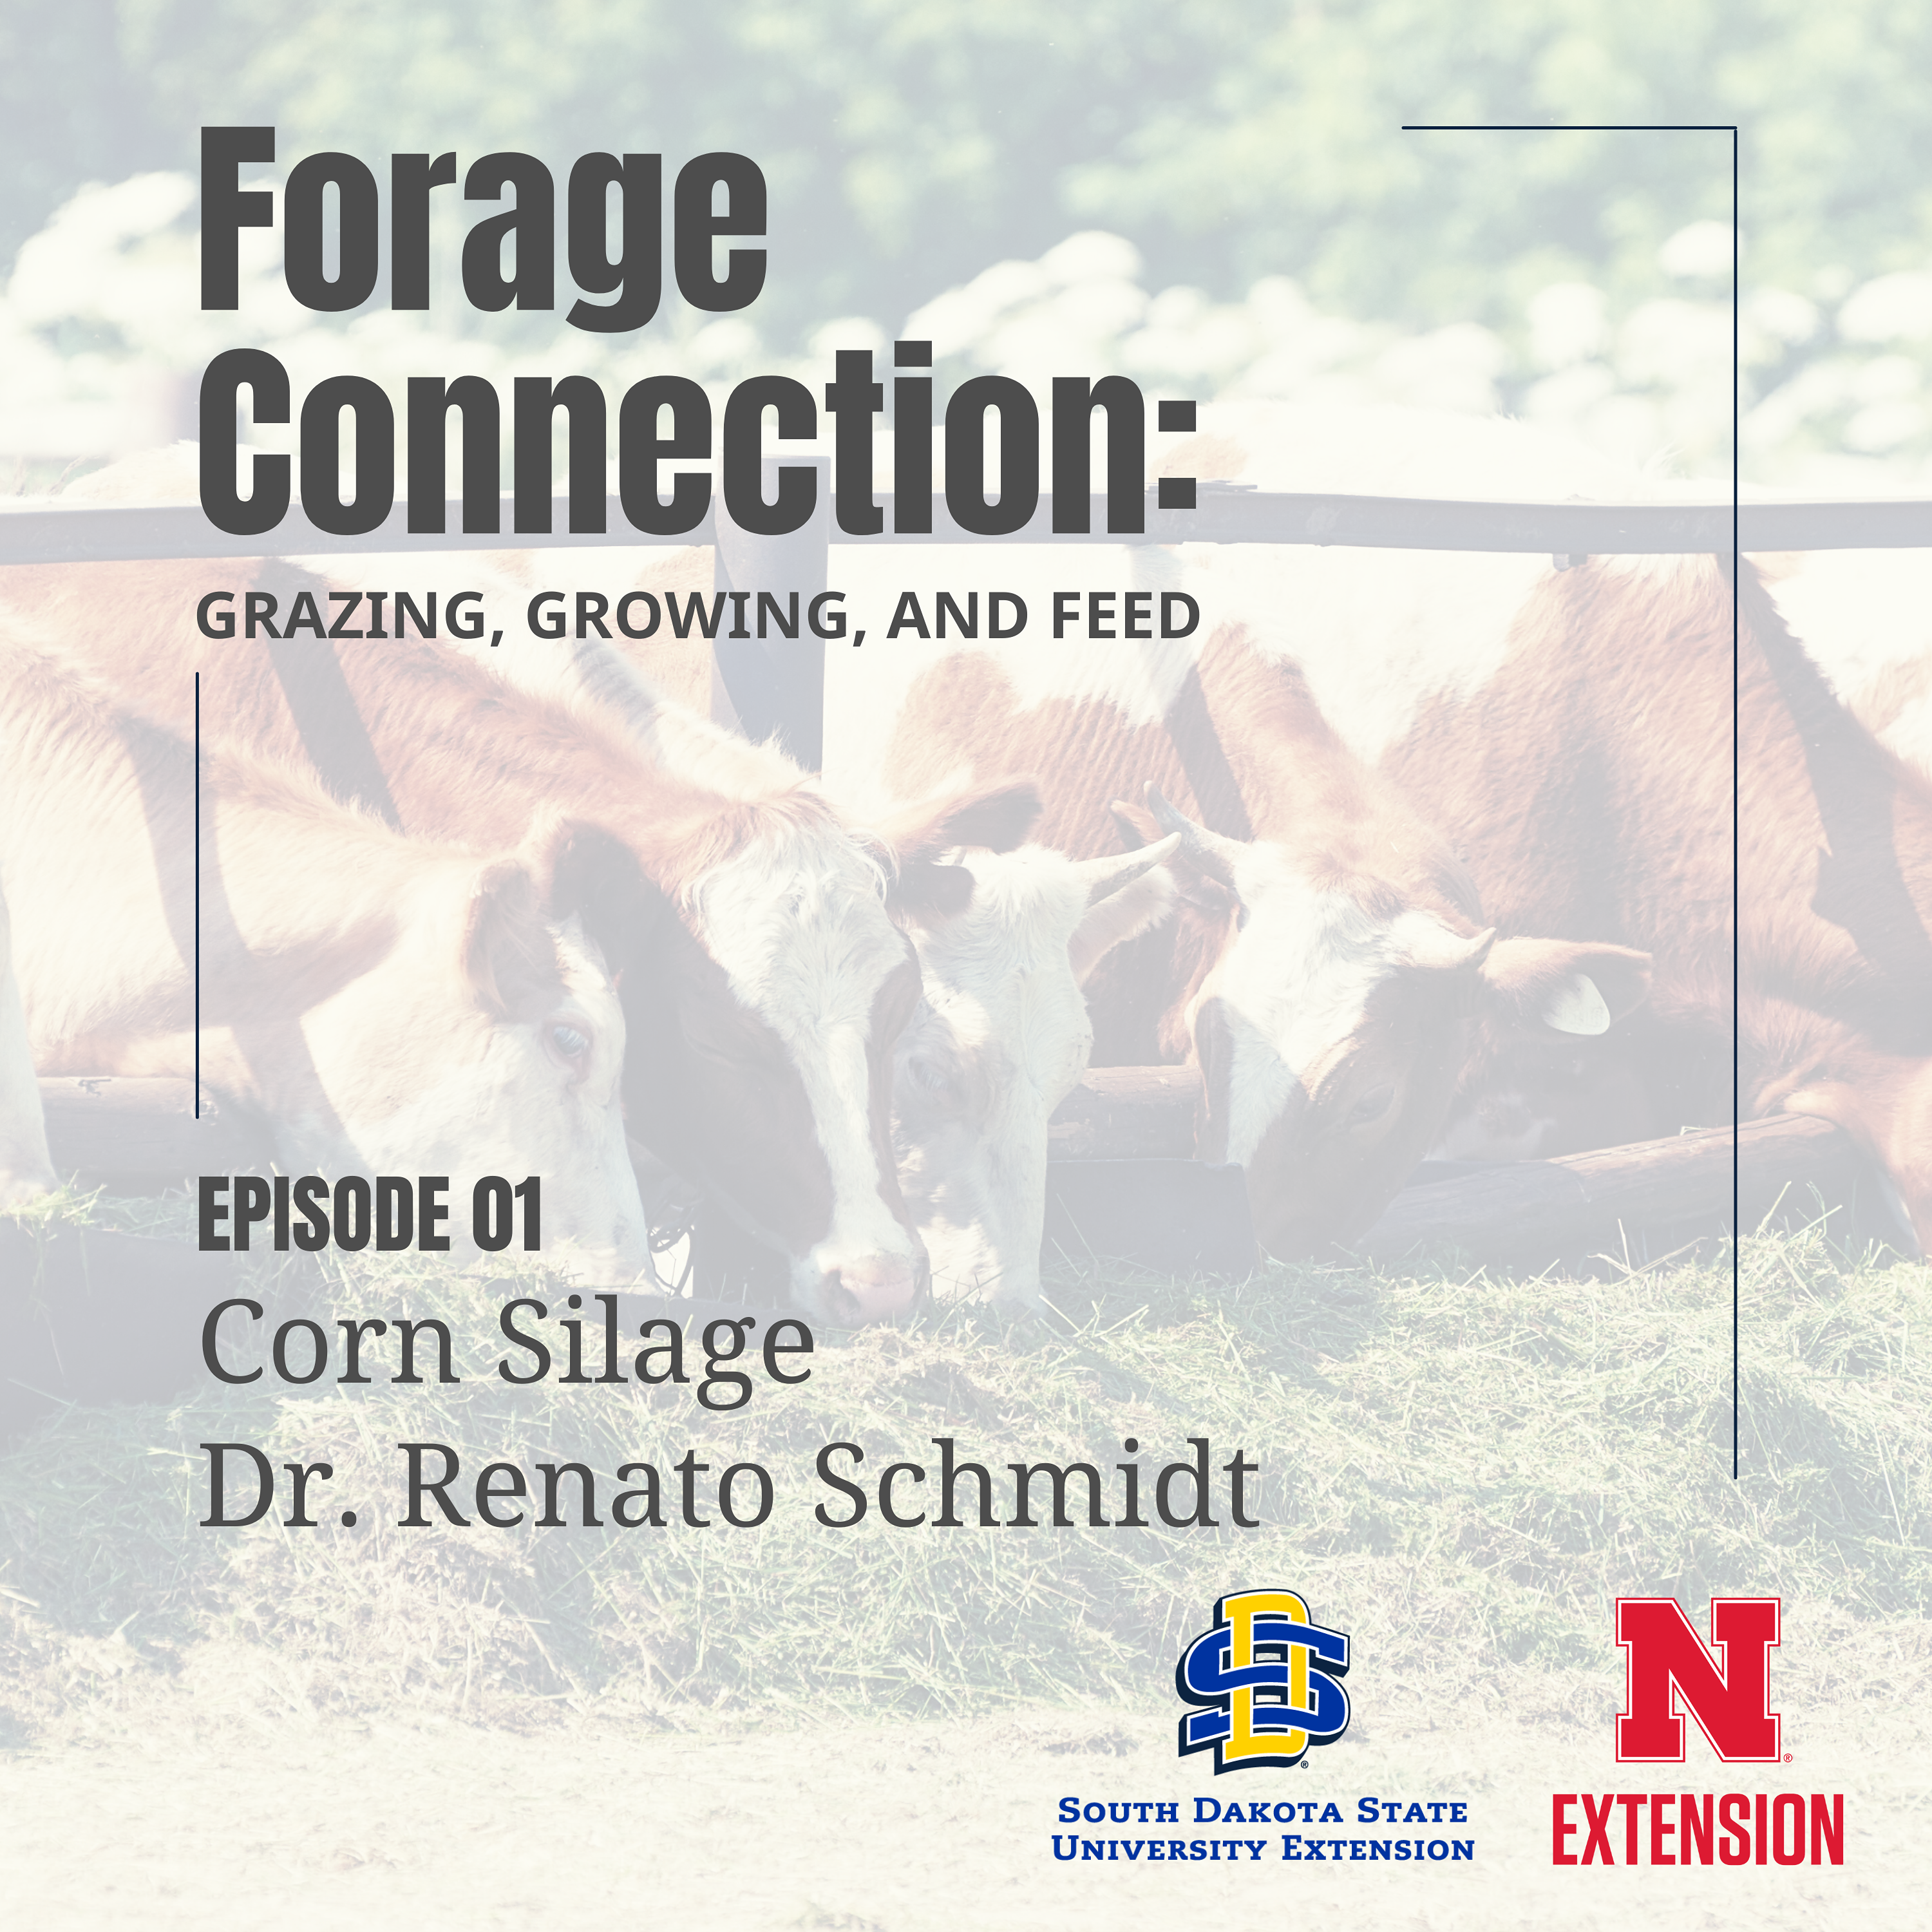 Corn Silage: Dr. Renato Schmidt - Part 1